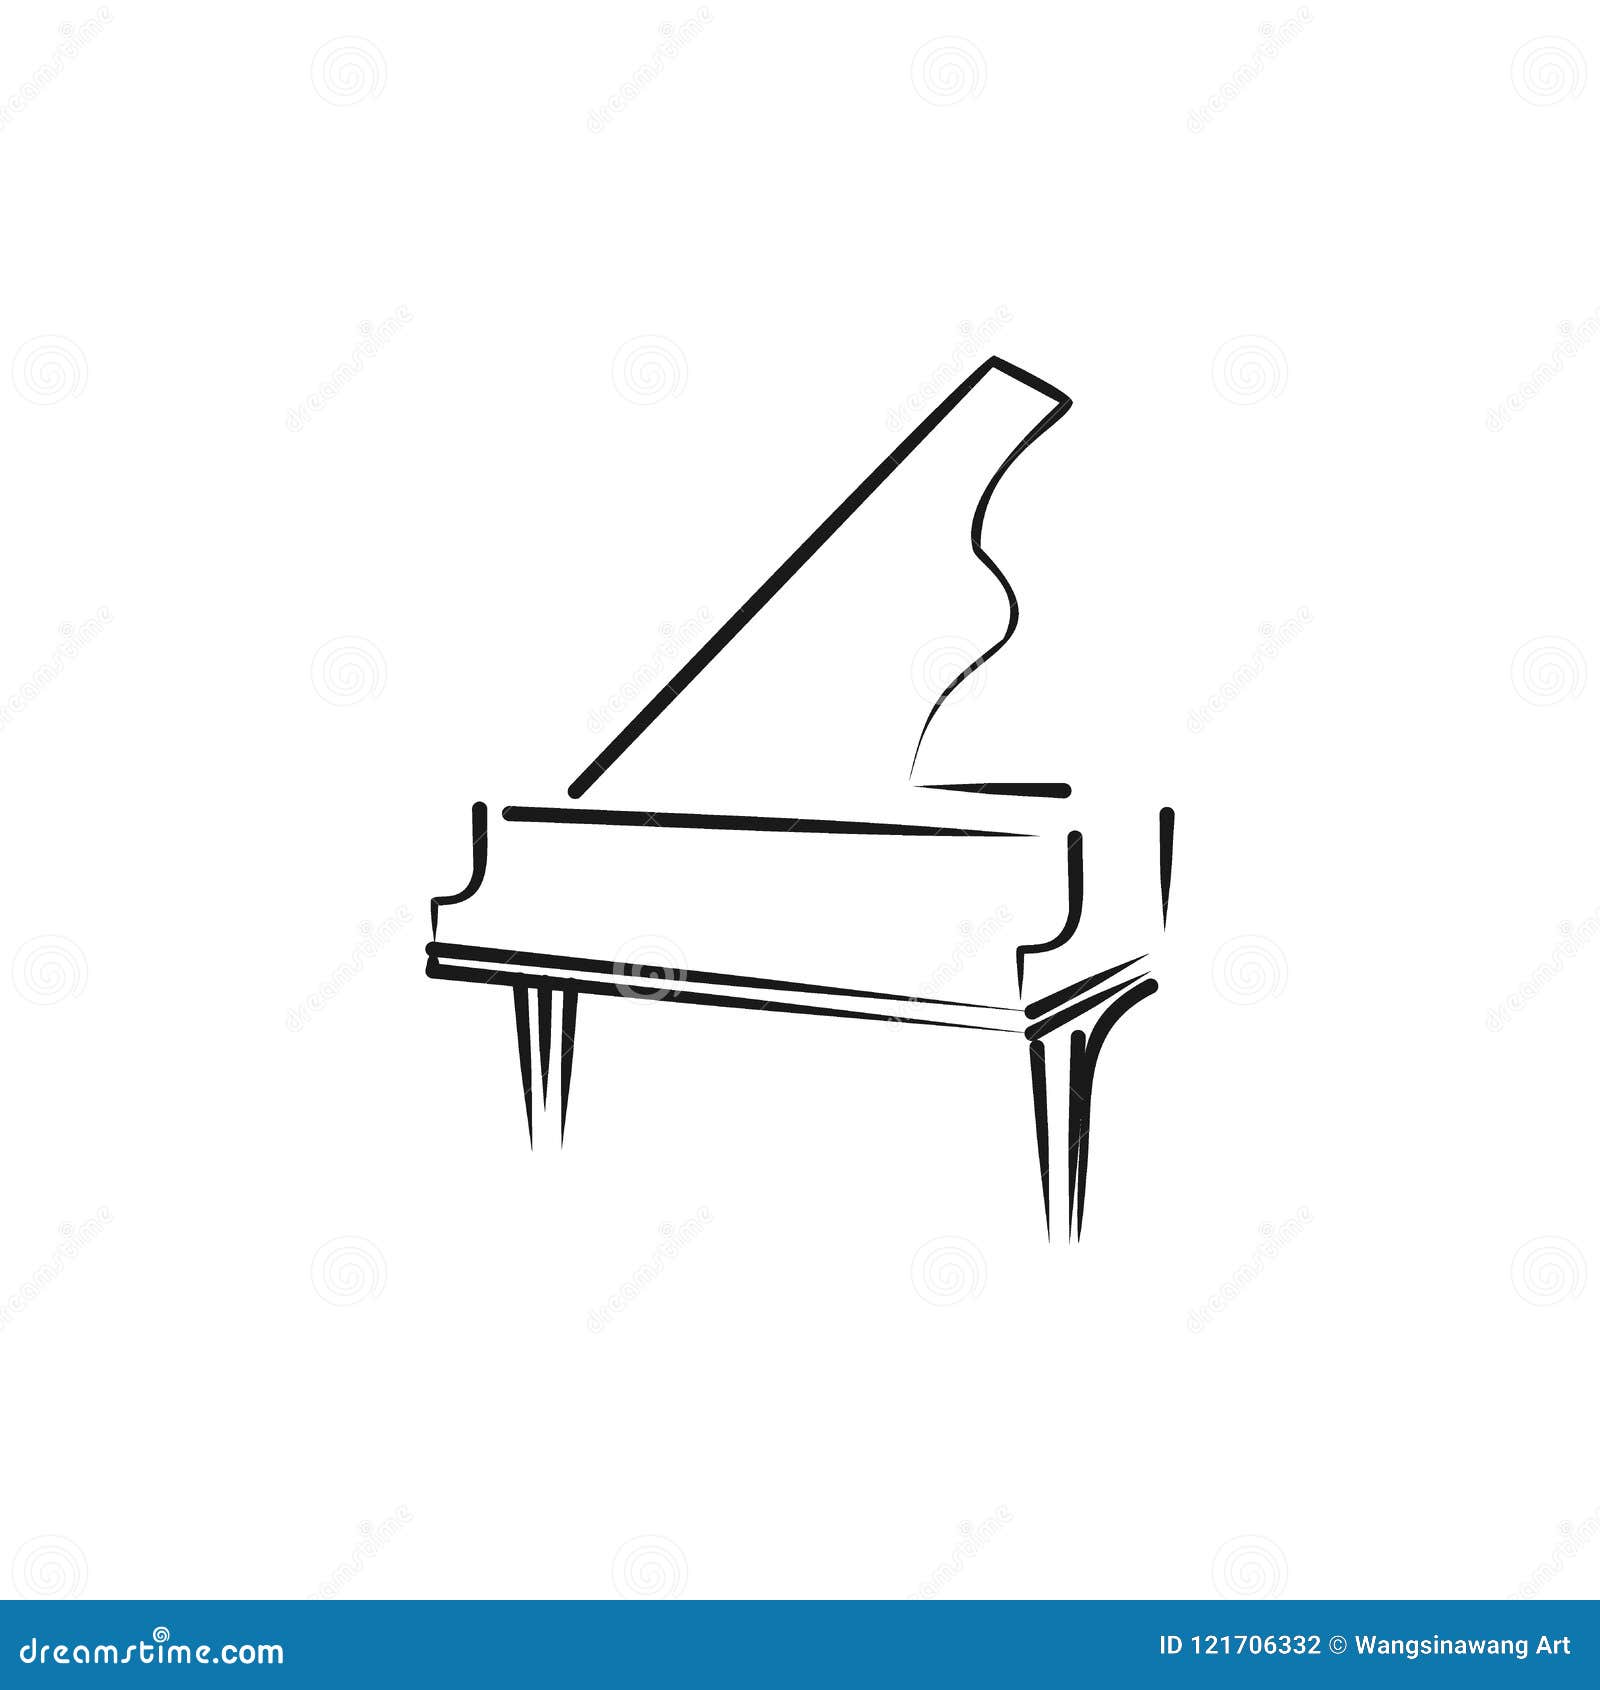 买钢琴选择电钢琴还是钢琴_北京盛世雅歌琴行